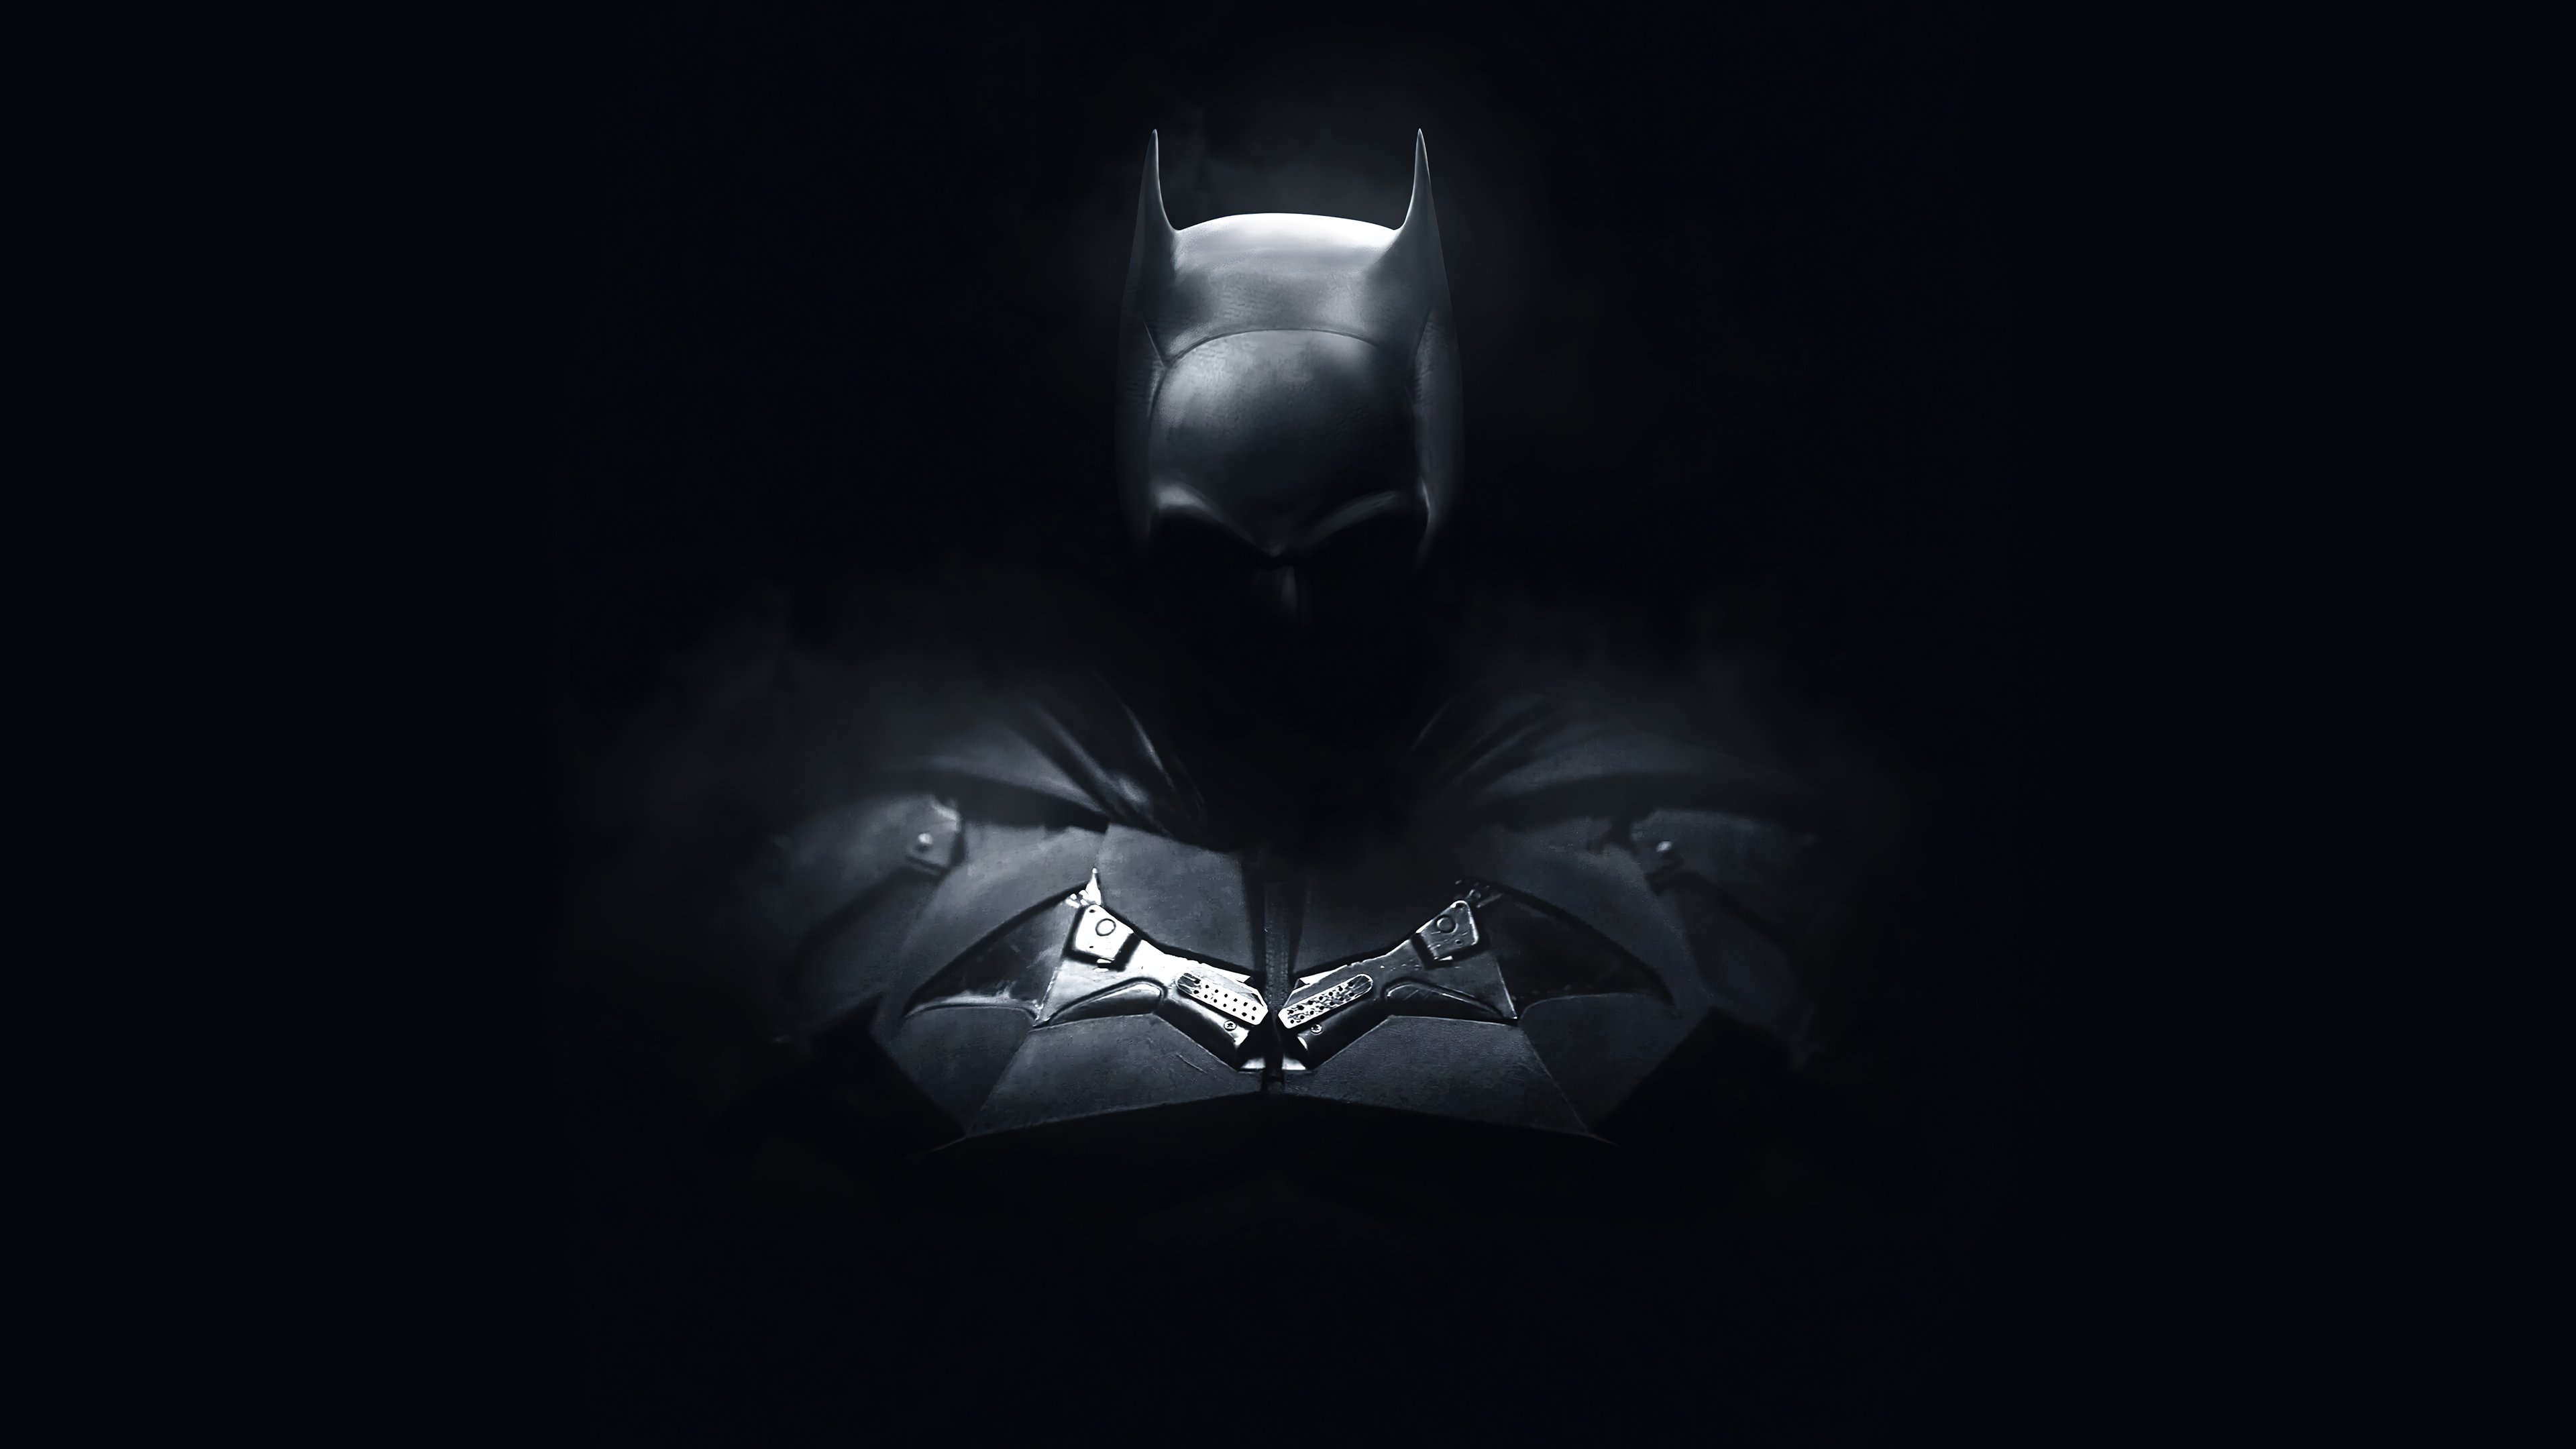 The Batman Movie 2022 PC DeskK Wallpaper free Download